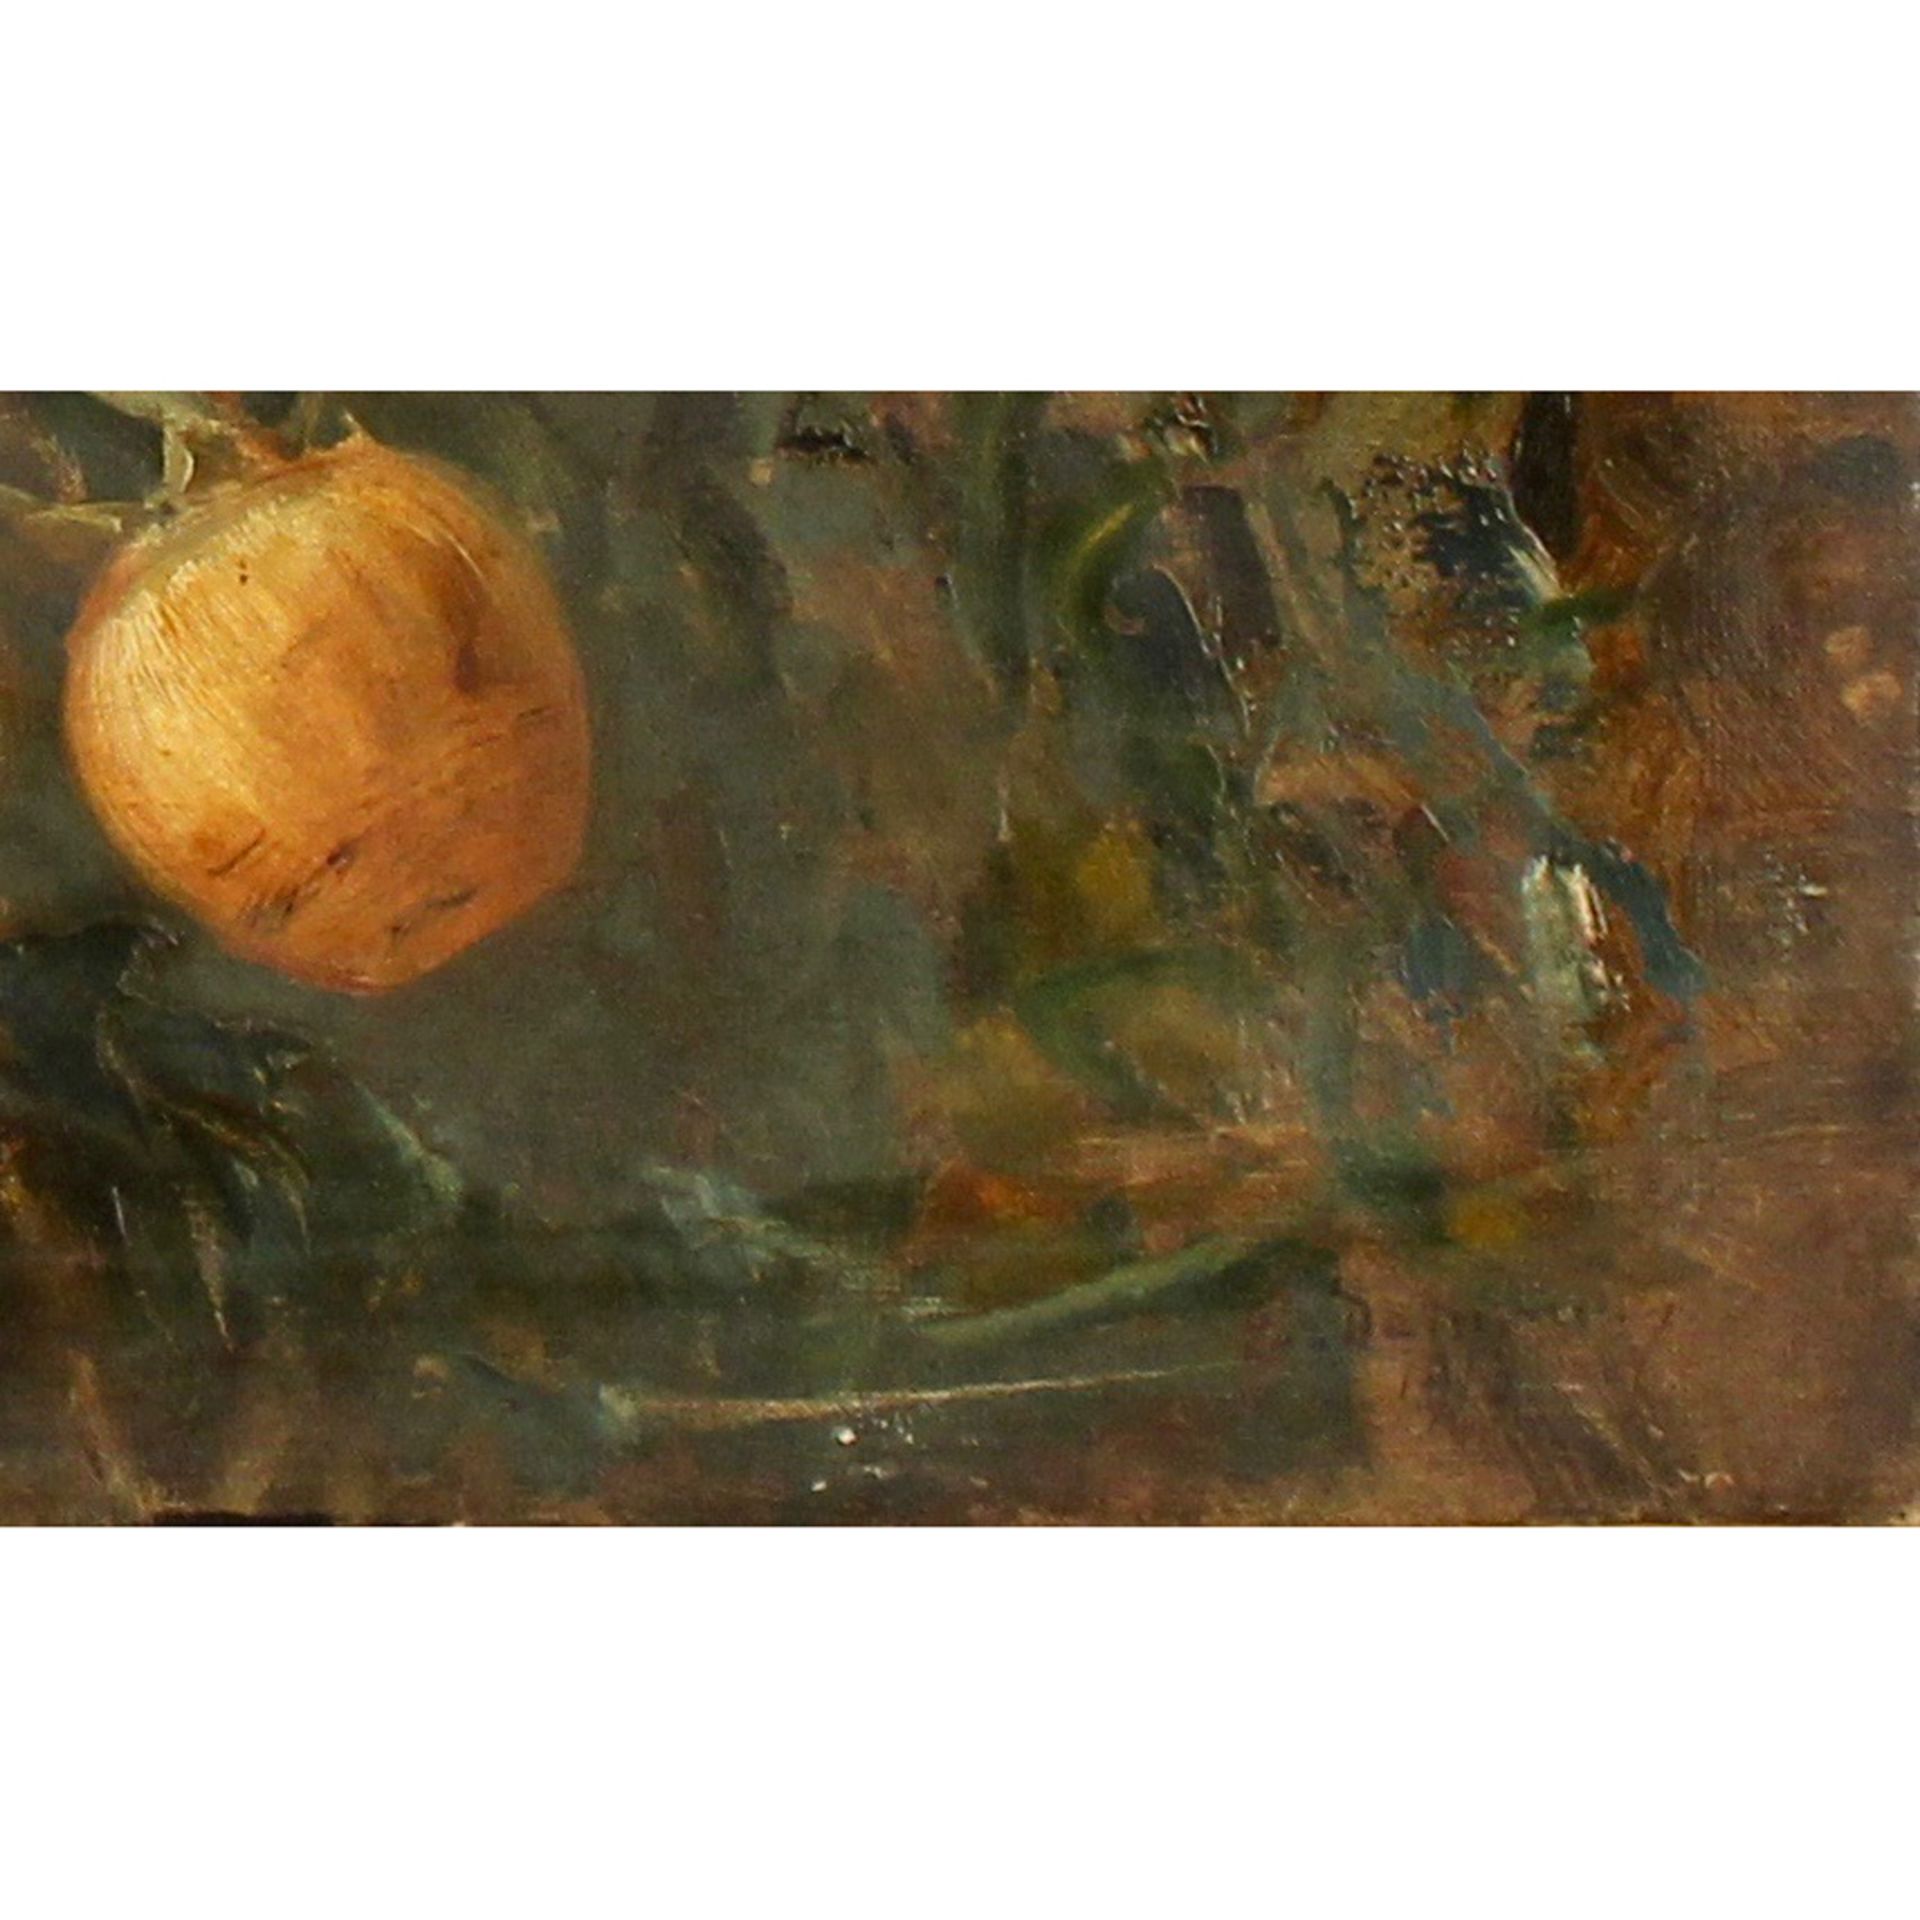 ETTORE DE MARIA BERGLER (1850/1938) "Rami con pesche" - "Branches with peaches" - Image 2 of 2